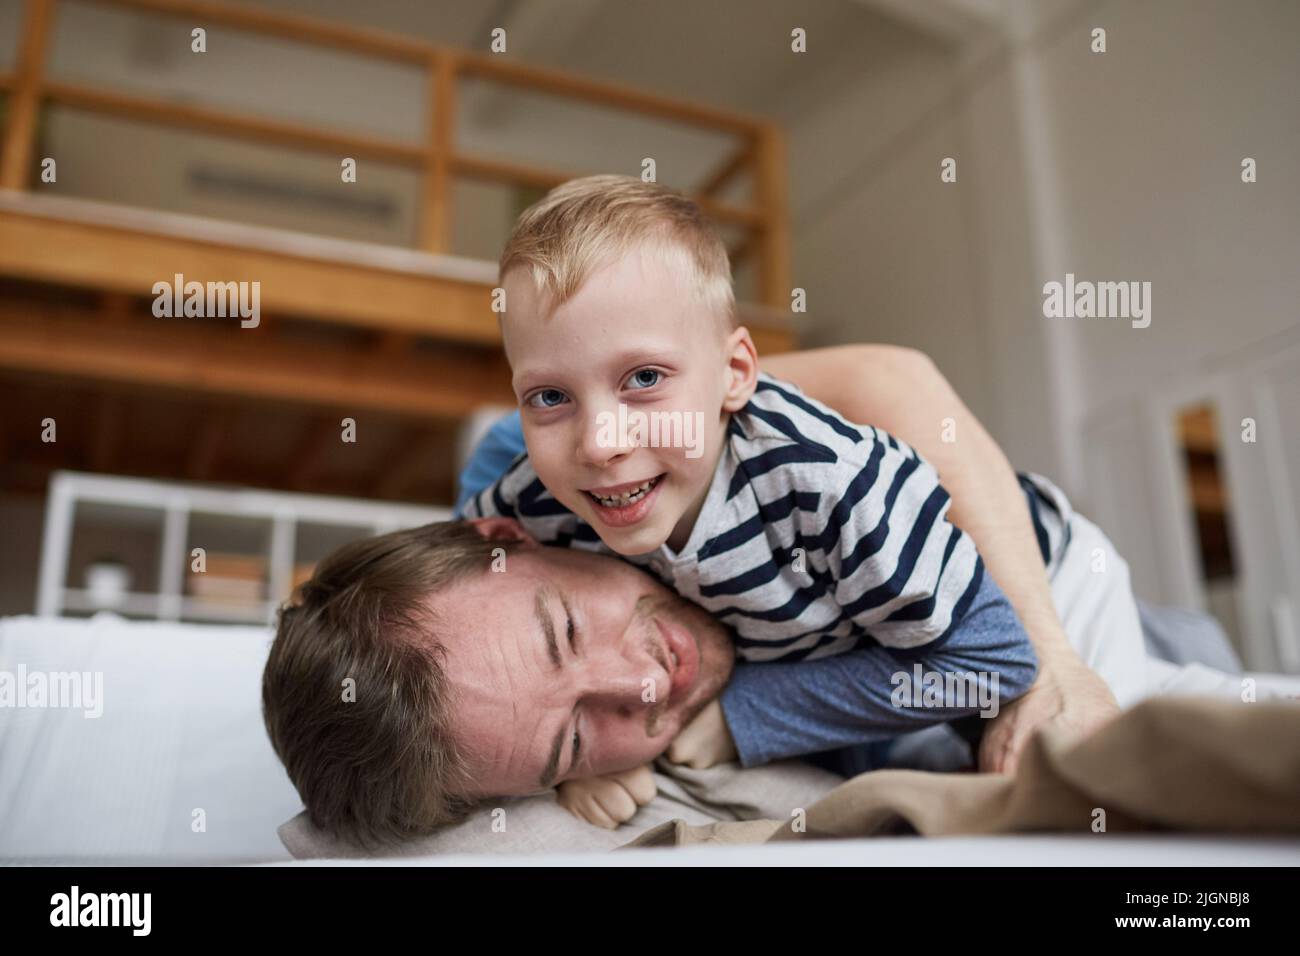 Portrait d'un garçon joyeux et excité avec des cheveux blonds qui se battent avec le père tout en s'amusant à la maison Banque D'Images